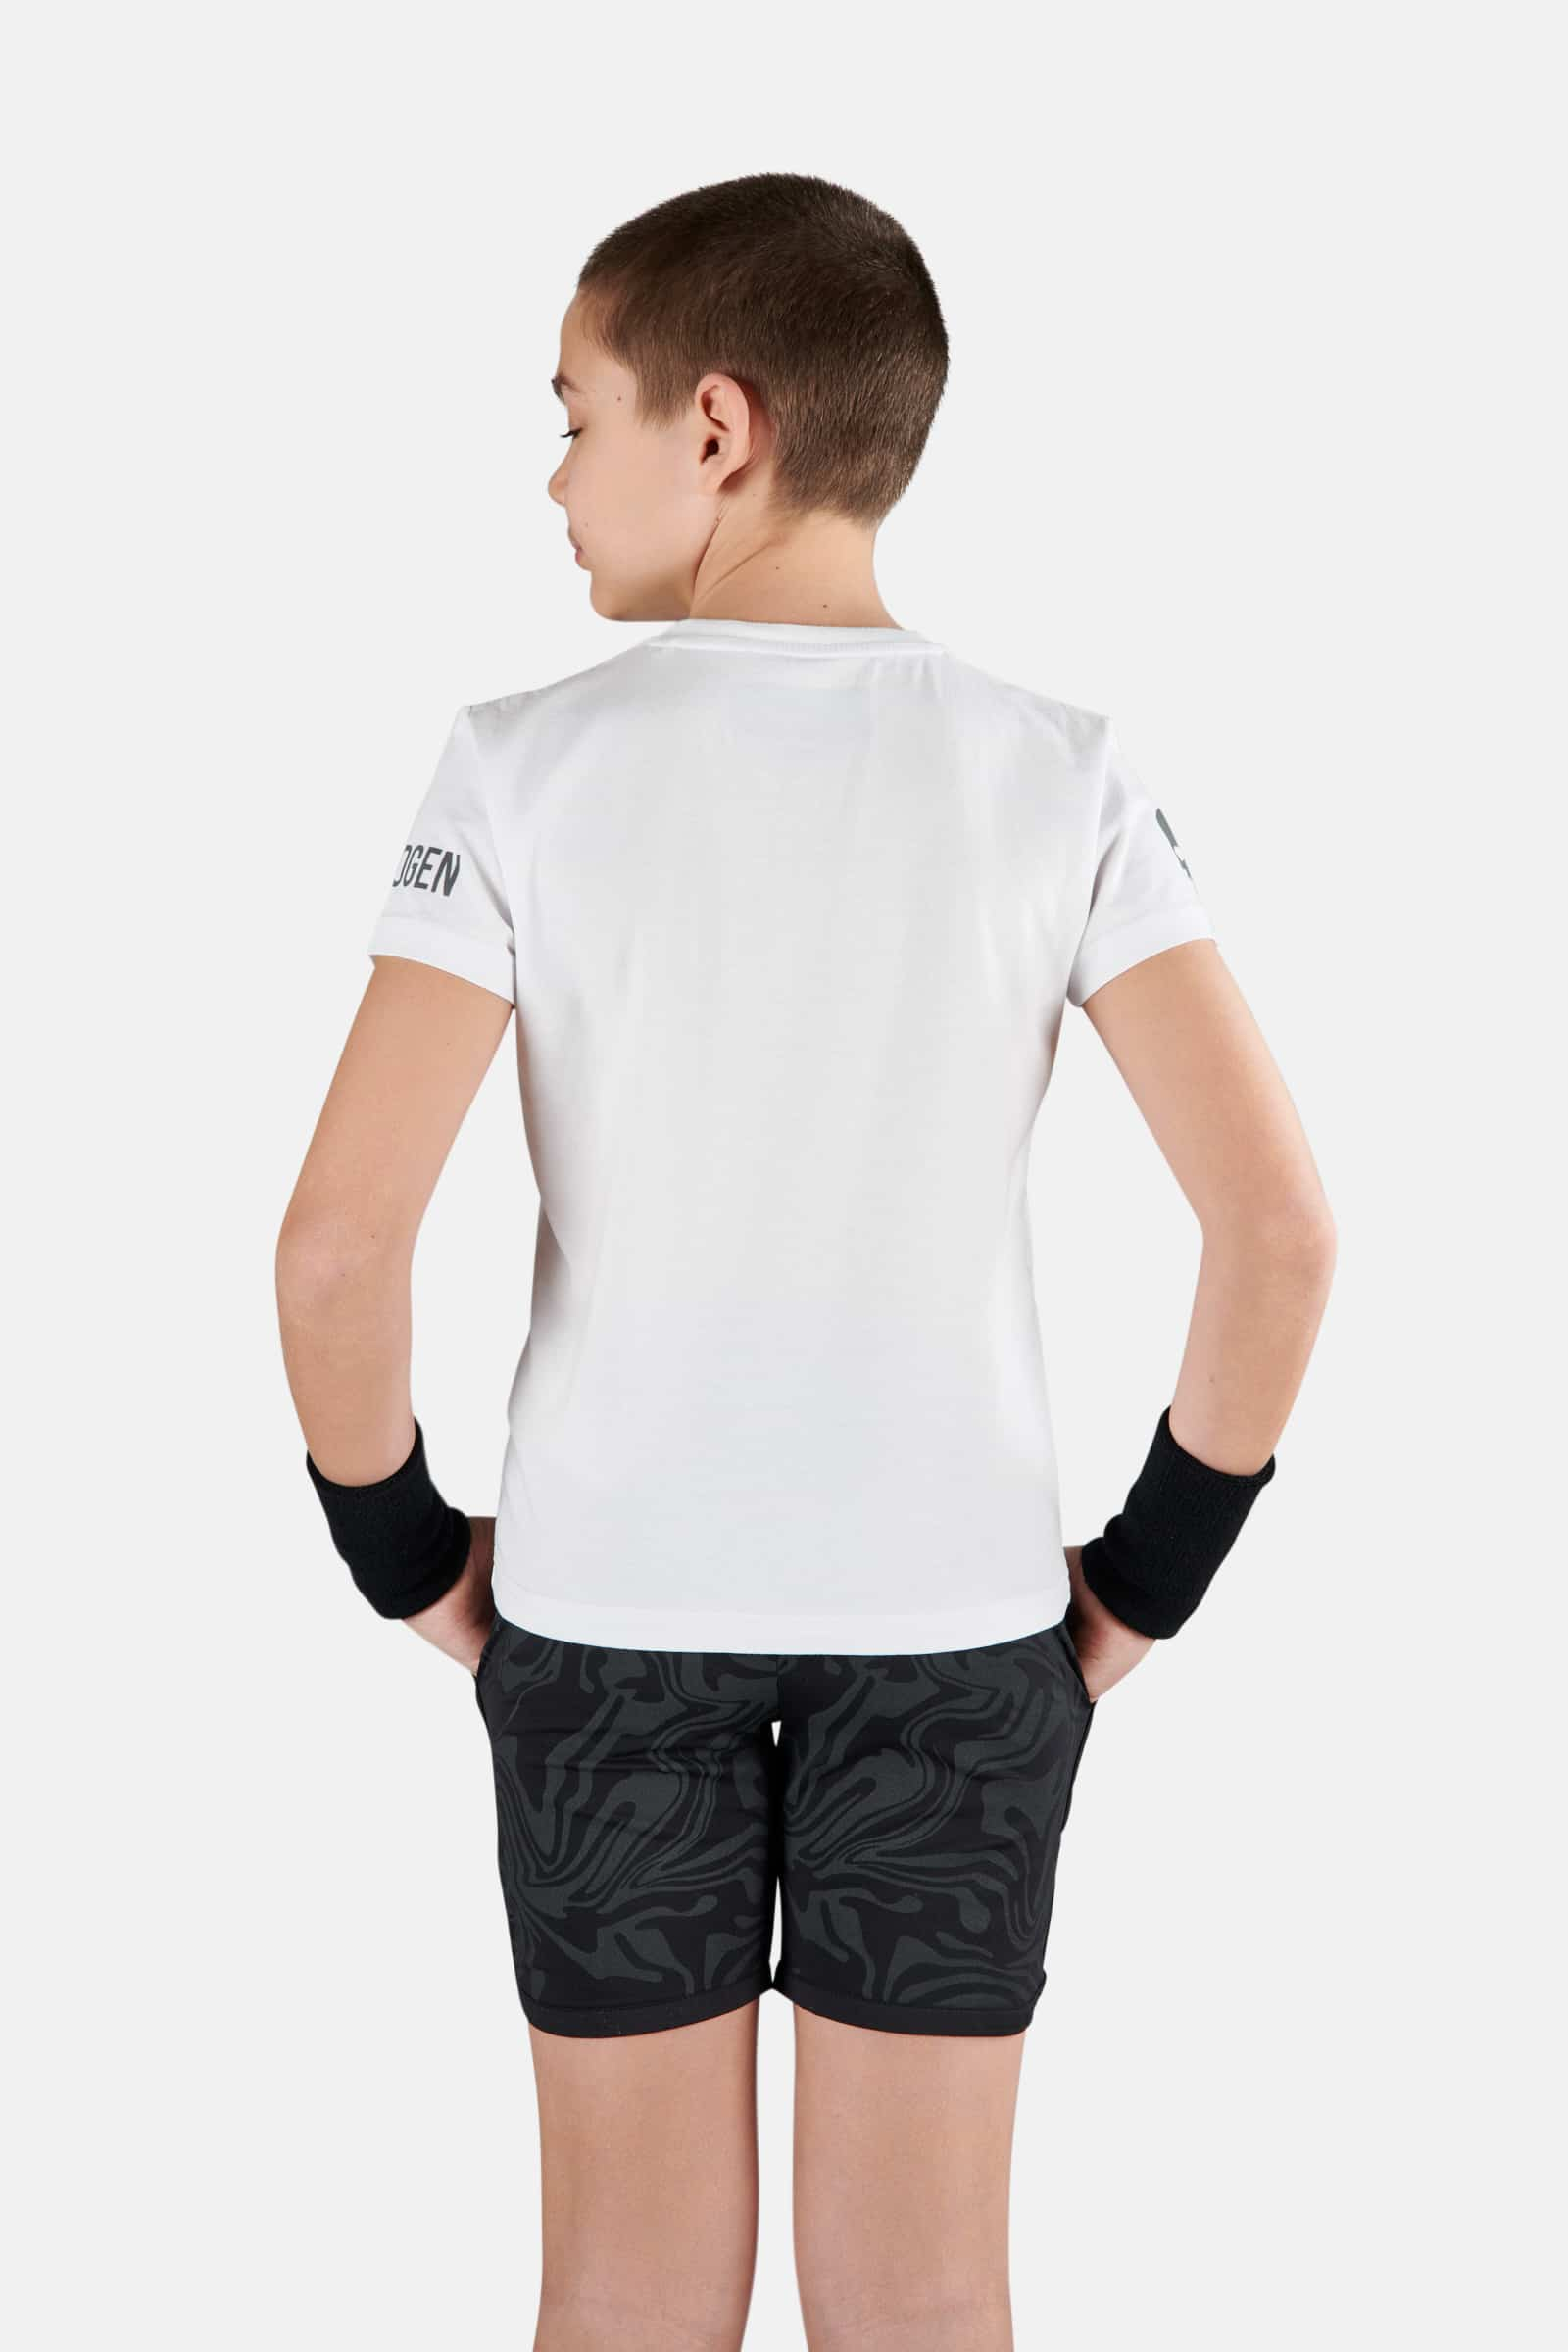 TENNIS COURT COTTON TEE - WHITE,SPRAY ART - Hydrogen - Luxury Sportwear